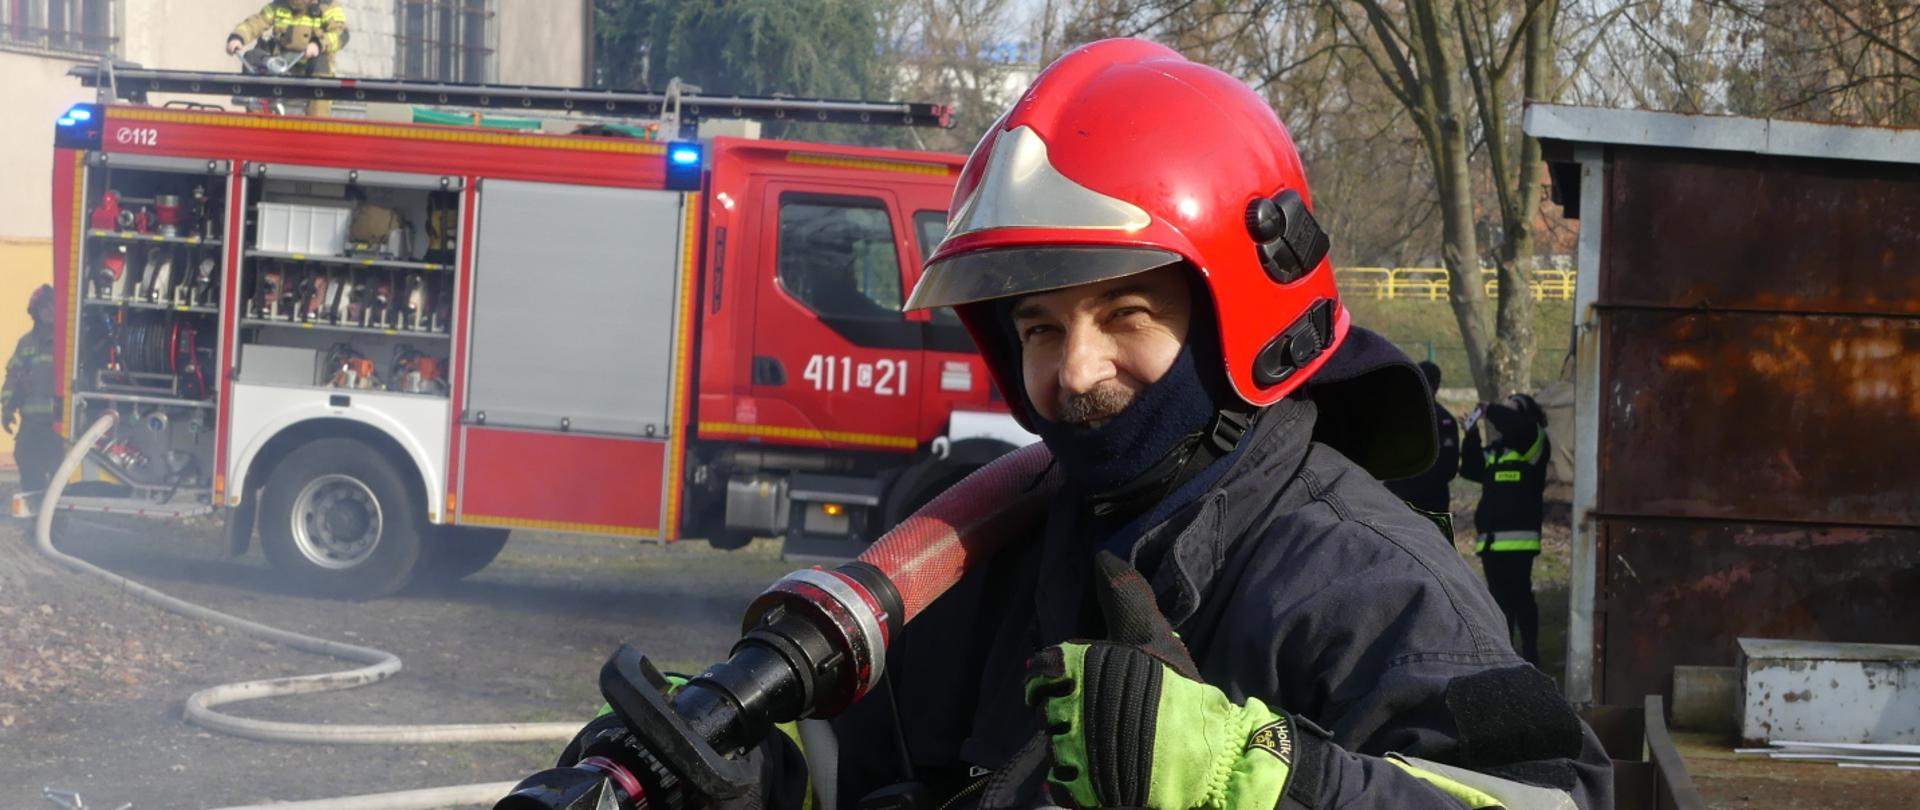 Zdjęcie przedstawia asp. sztab. Roberta Maciejewskiego ubranego w ubranie specjalne i hełm strażacki. W rękach trzyma prądownicę. W tle samochód gaśniczy JRG Brodnica.